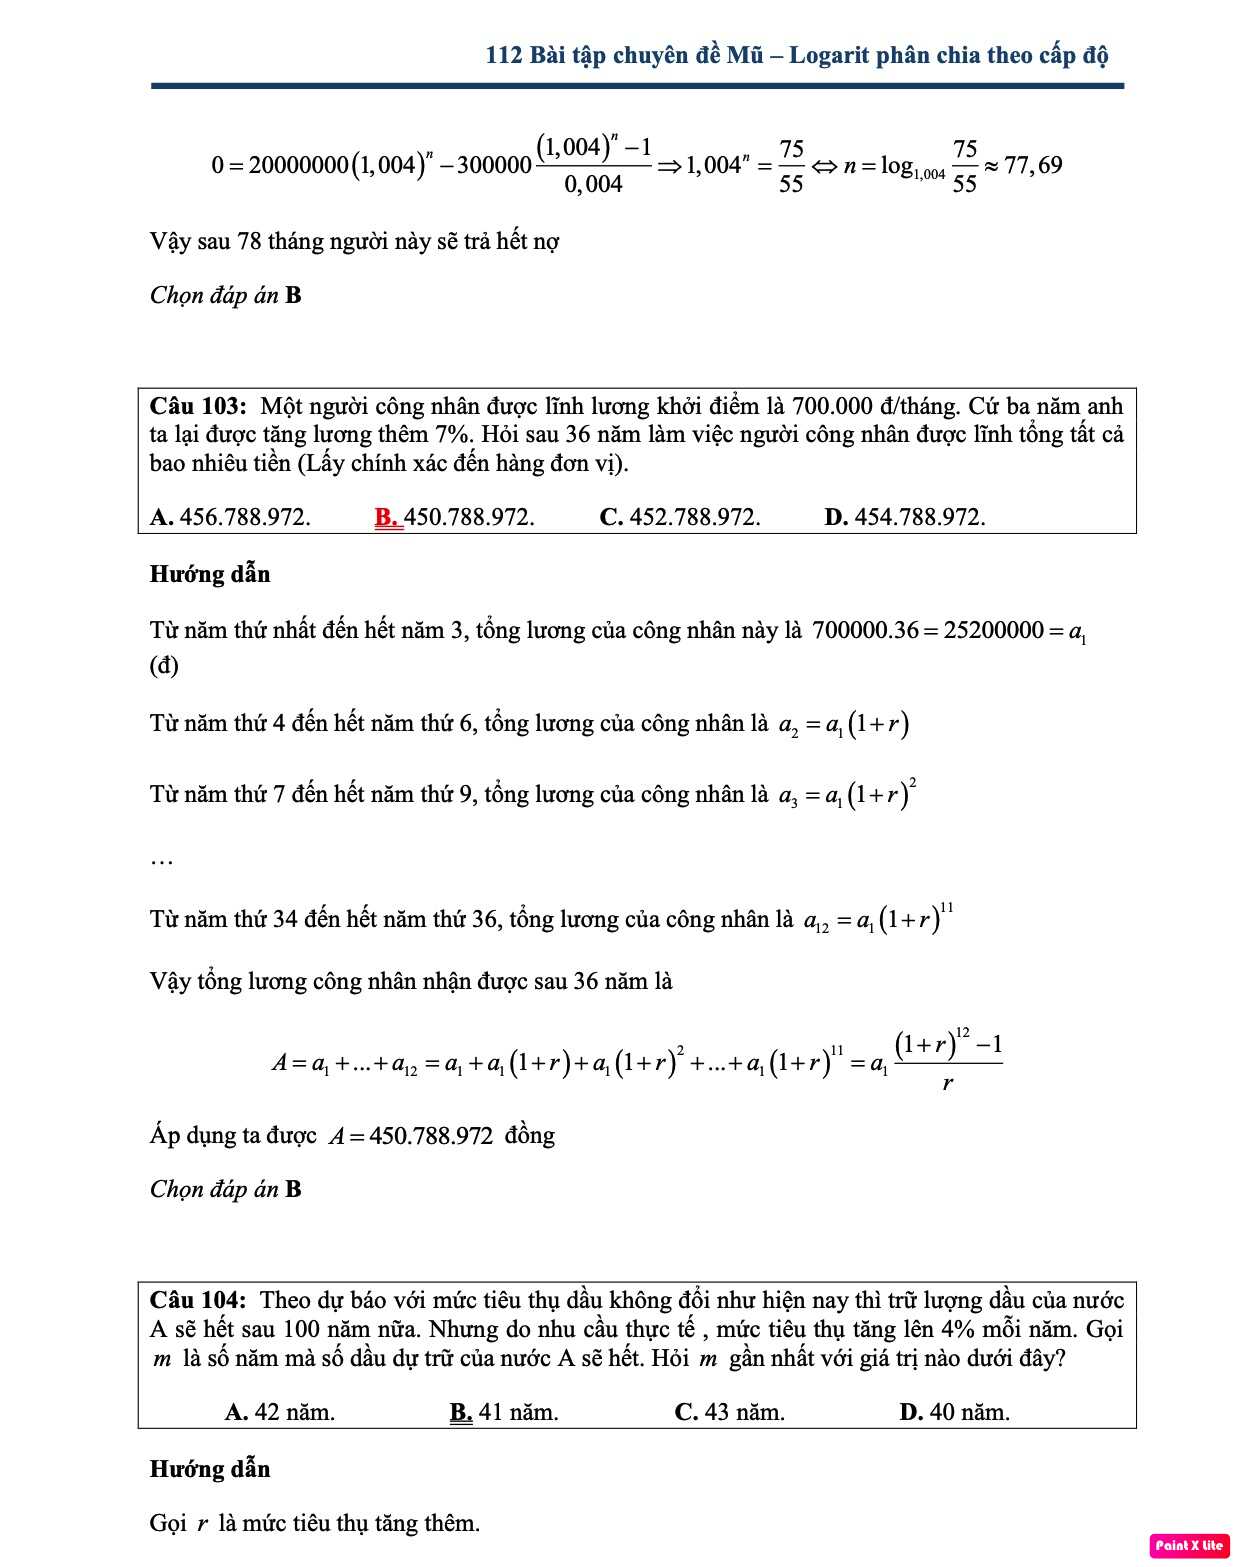 Bài tập trắc nghiệm về hàm số mũ và logarit